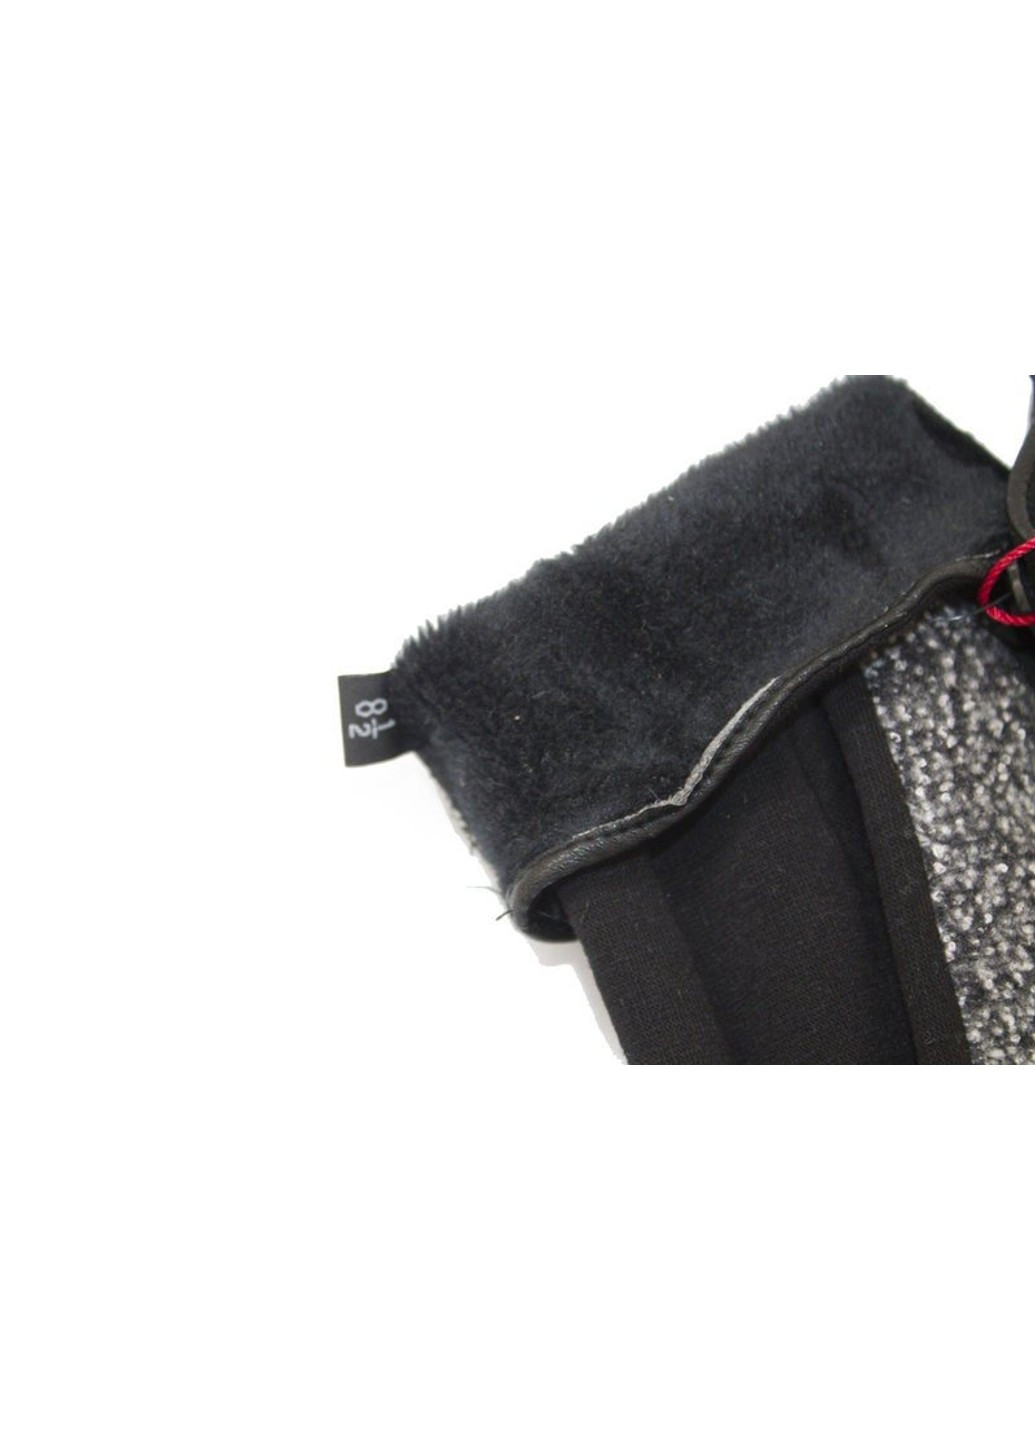 Комбинированные женские перчатки с бантиком M Shust Gloves (261853571)